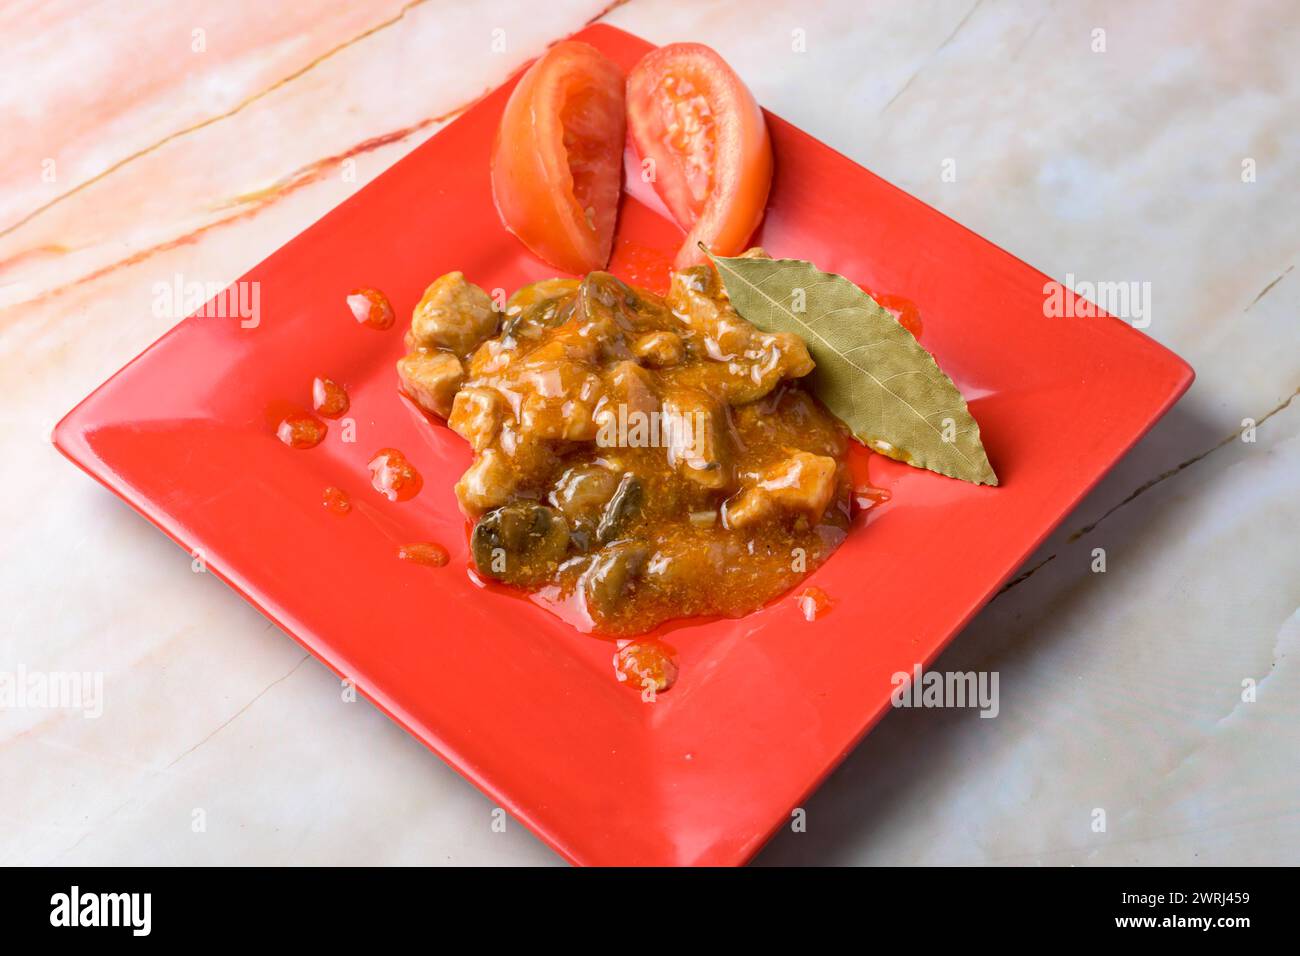 Schweineeintopf mit Lorbeerblatt und Tomatengarnitur auf rotem Teller, Marmorhintergrund, typisches Essen, typisch mediterrane mallorquinische Küche Stockfoto